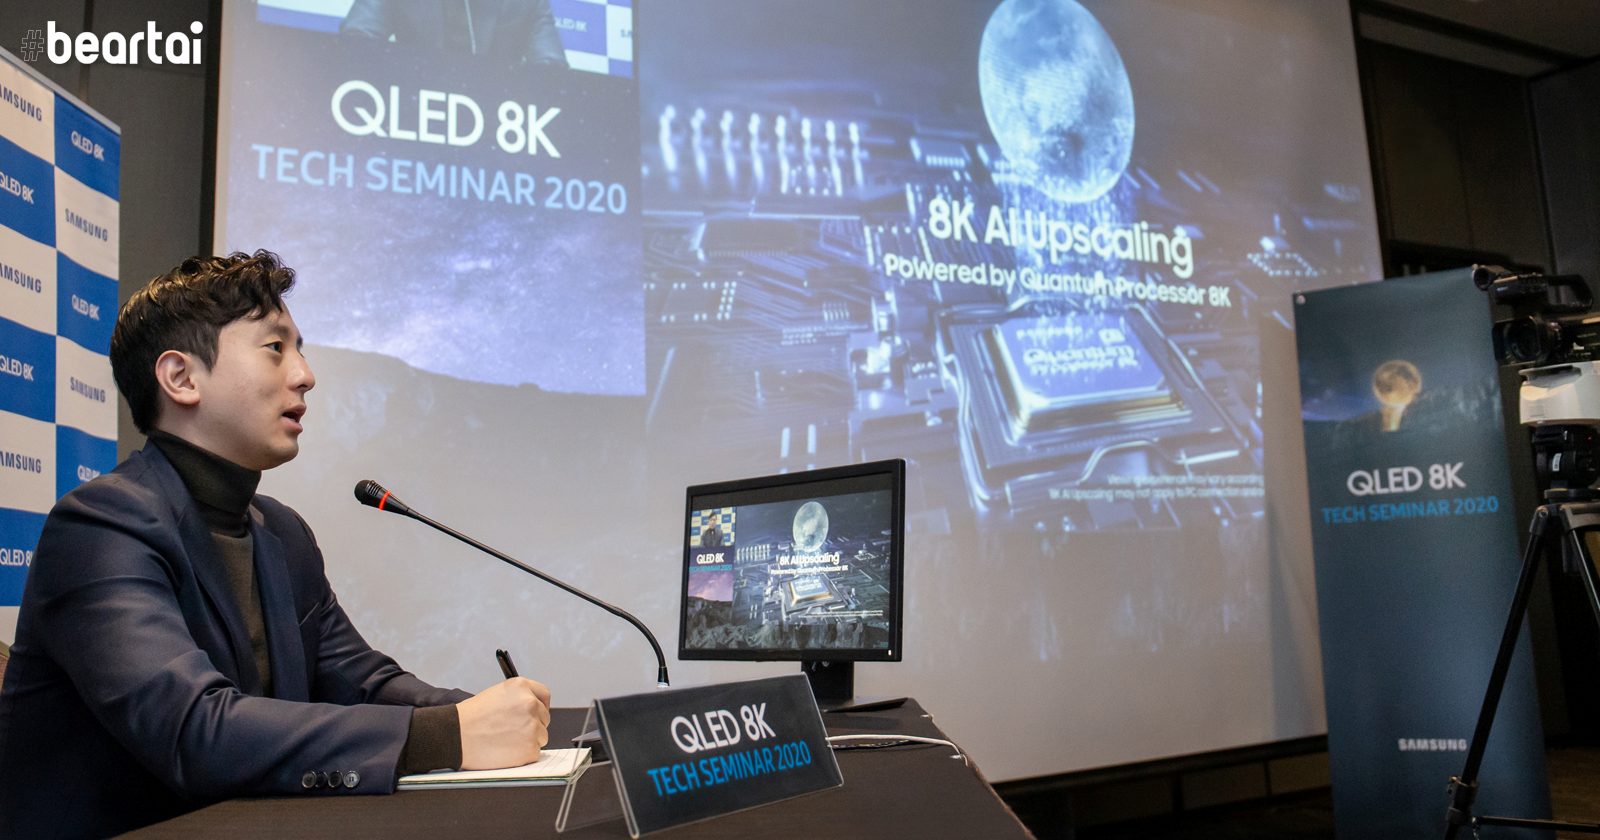 Samsung เปิดตัวทีวี QLED 8K ชุดใหม่ พร้อมโชว์เทคโนโลยีทีวีประจำปี 2020